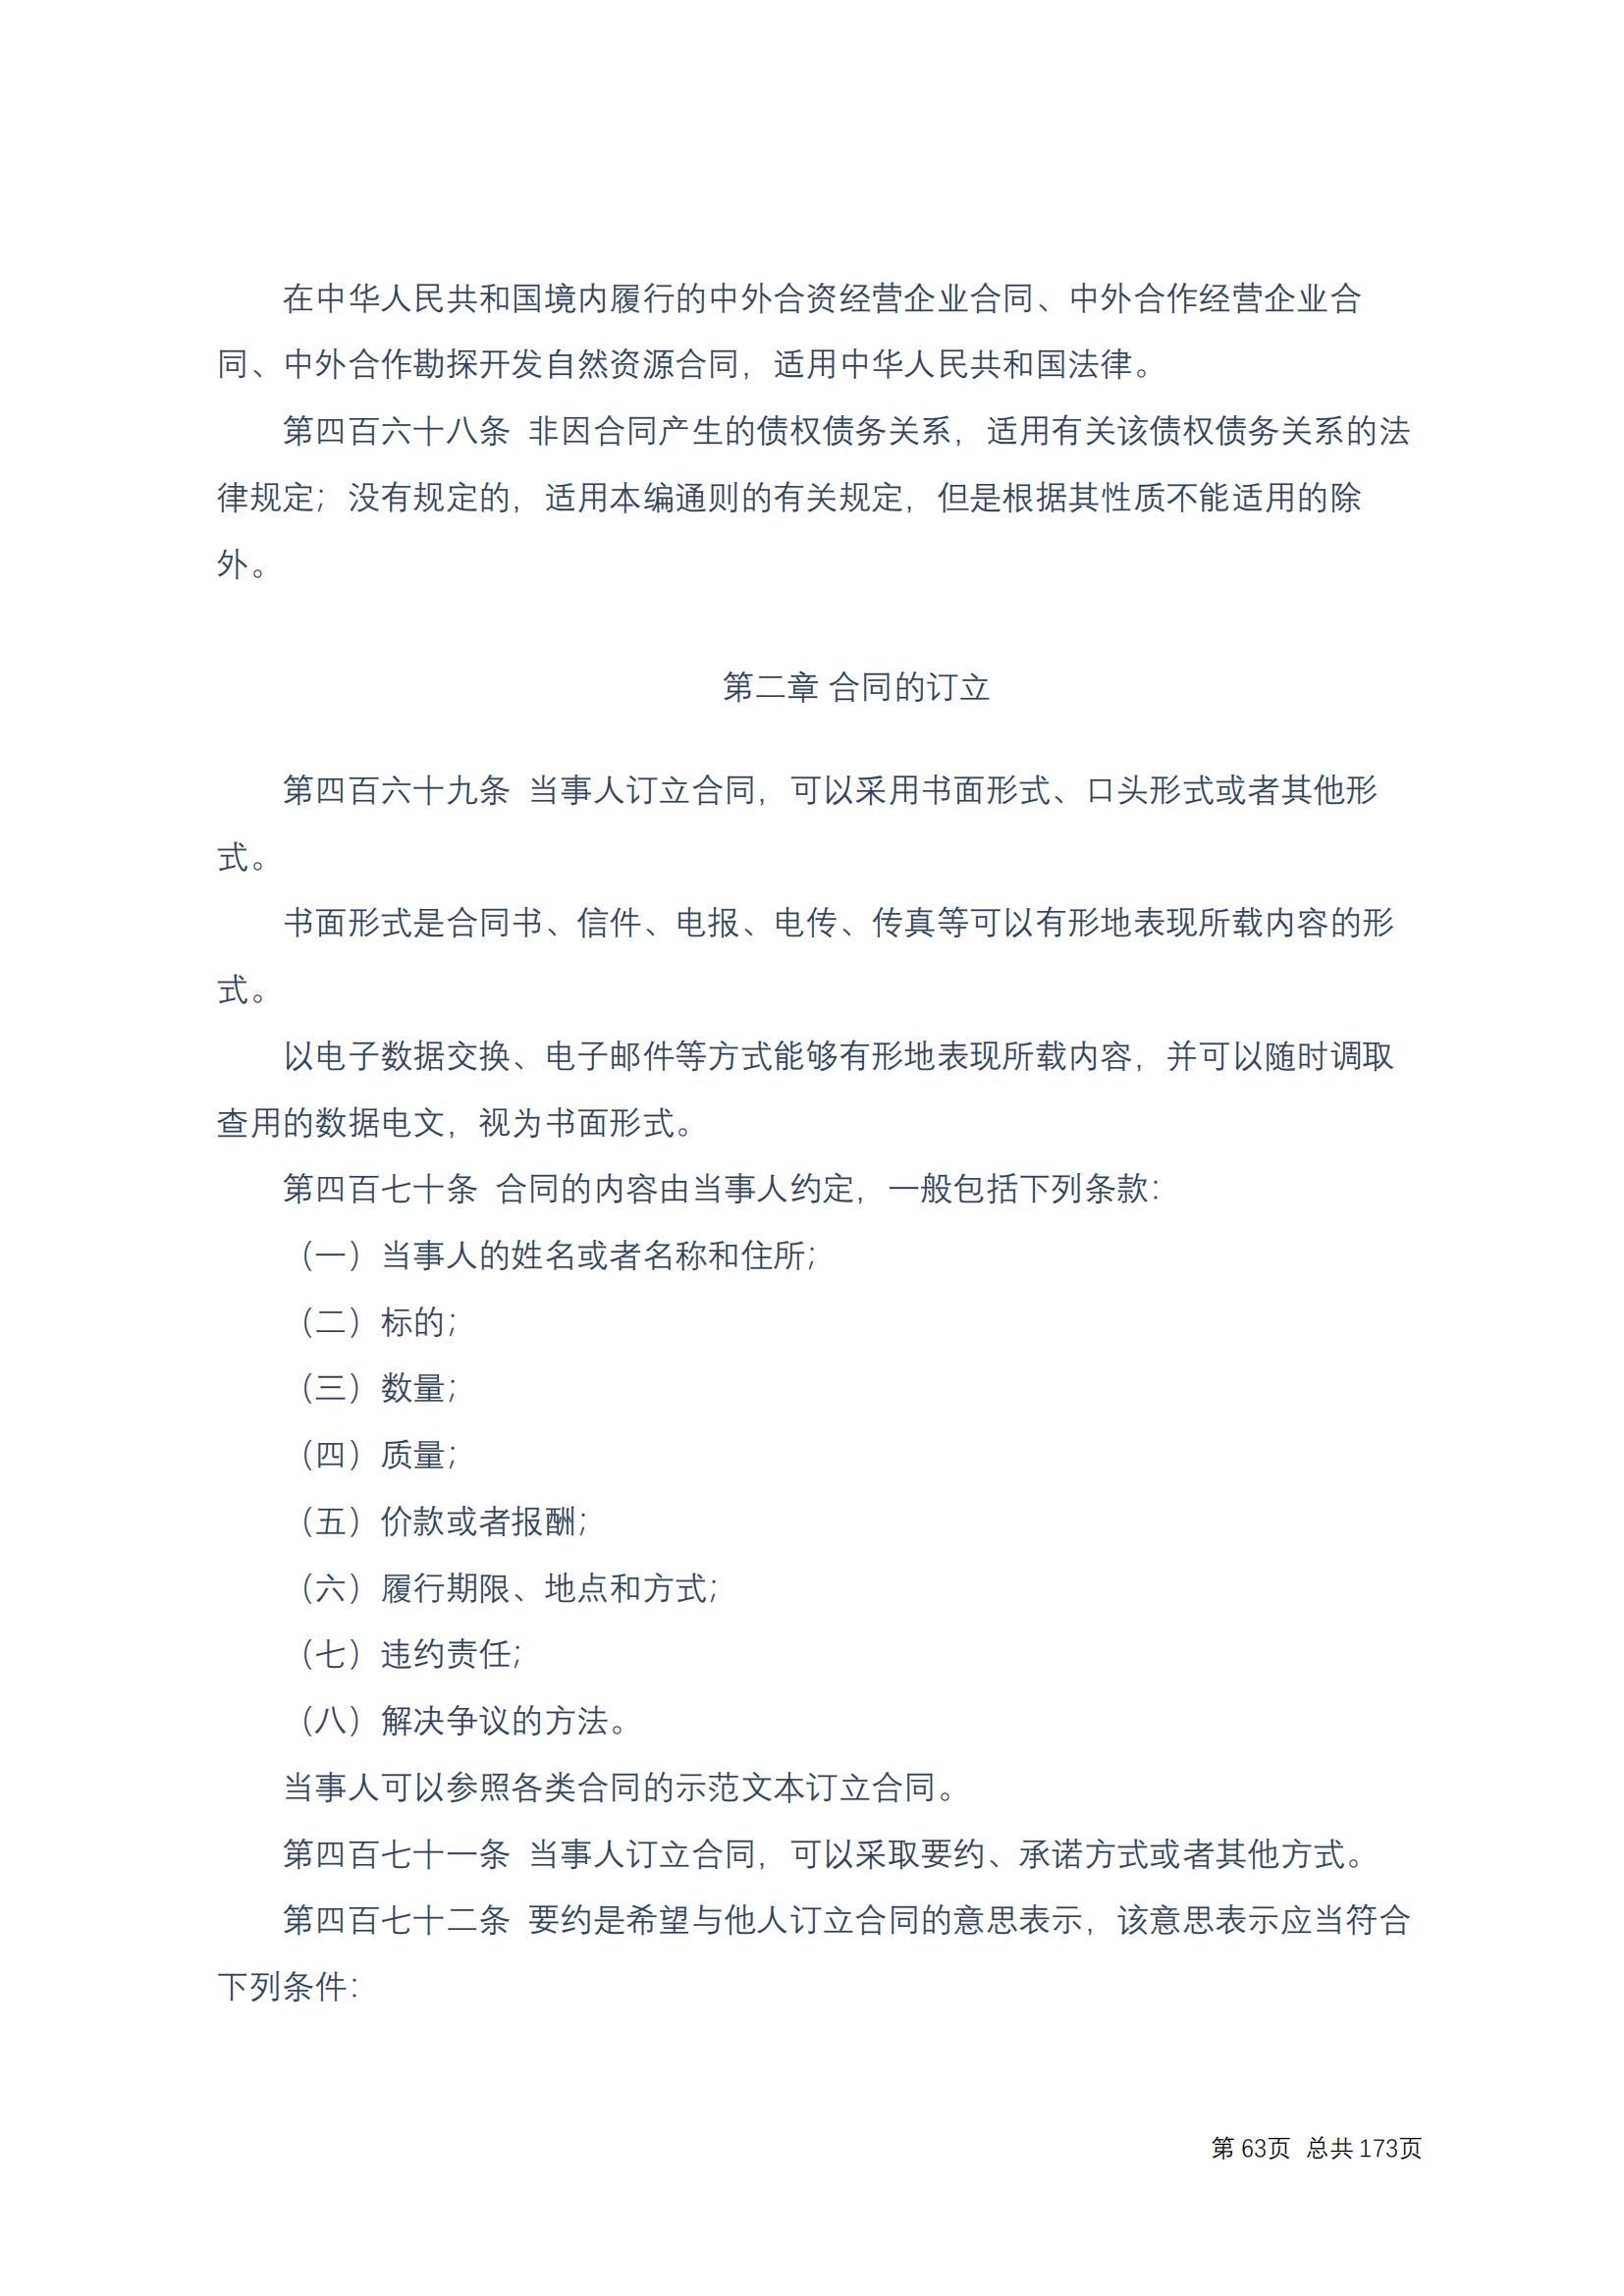 中华人民共和国民法典 修改过_62